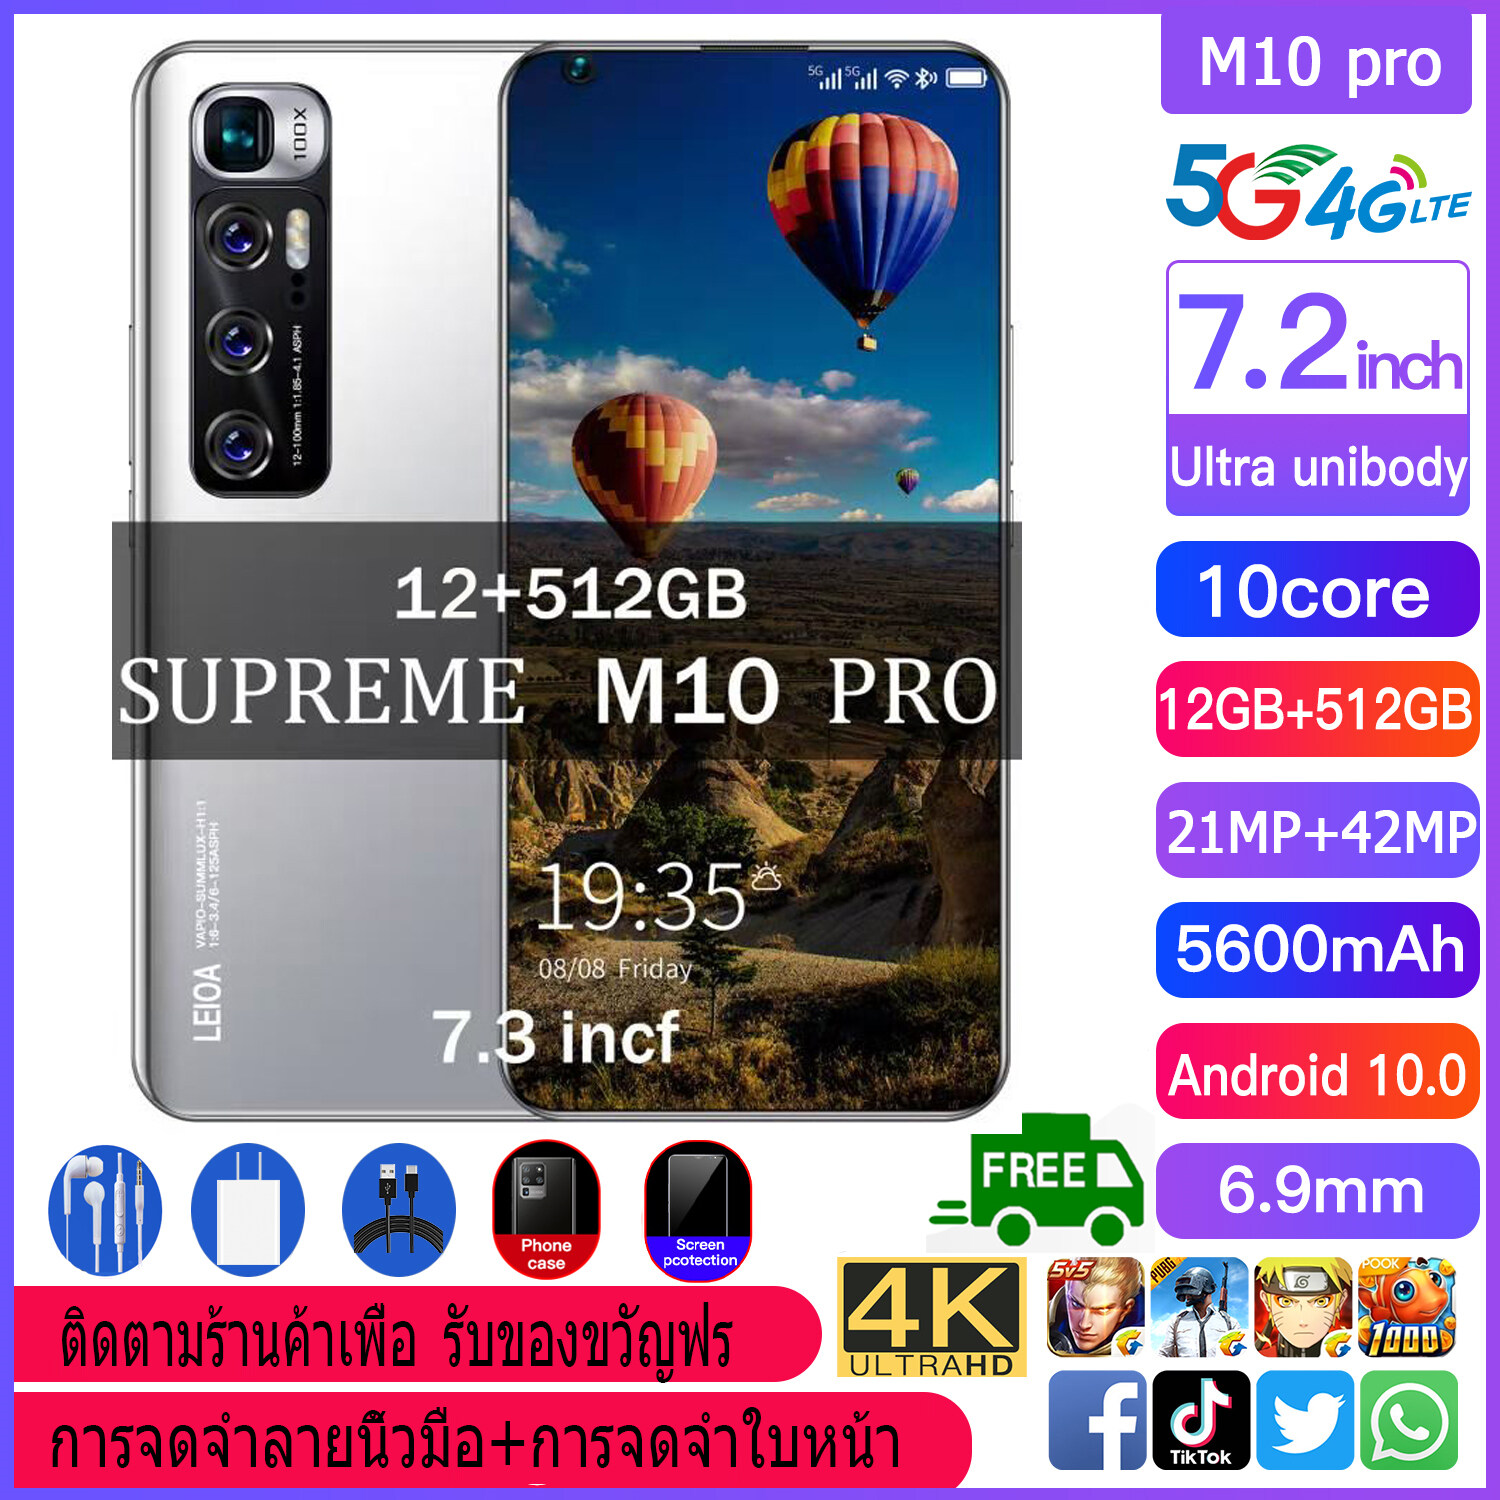 มือถือราคาถูก M11 Pro มือถือสมาร์ทโฟนจอใหญ่ 7.2 นิ้ว RAM12G Rom512GB หน่วยความจำขนาดใหญ่รองรับ 5G จริงซิม Android ระบบสแกนใบหน้าส่งฟรีทั่วไทย สแตนด์บาย2ซิม โทรศัพท์มือถือ ใช้แอพธนาคารได้